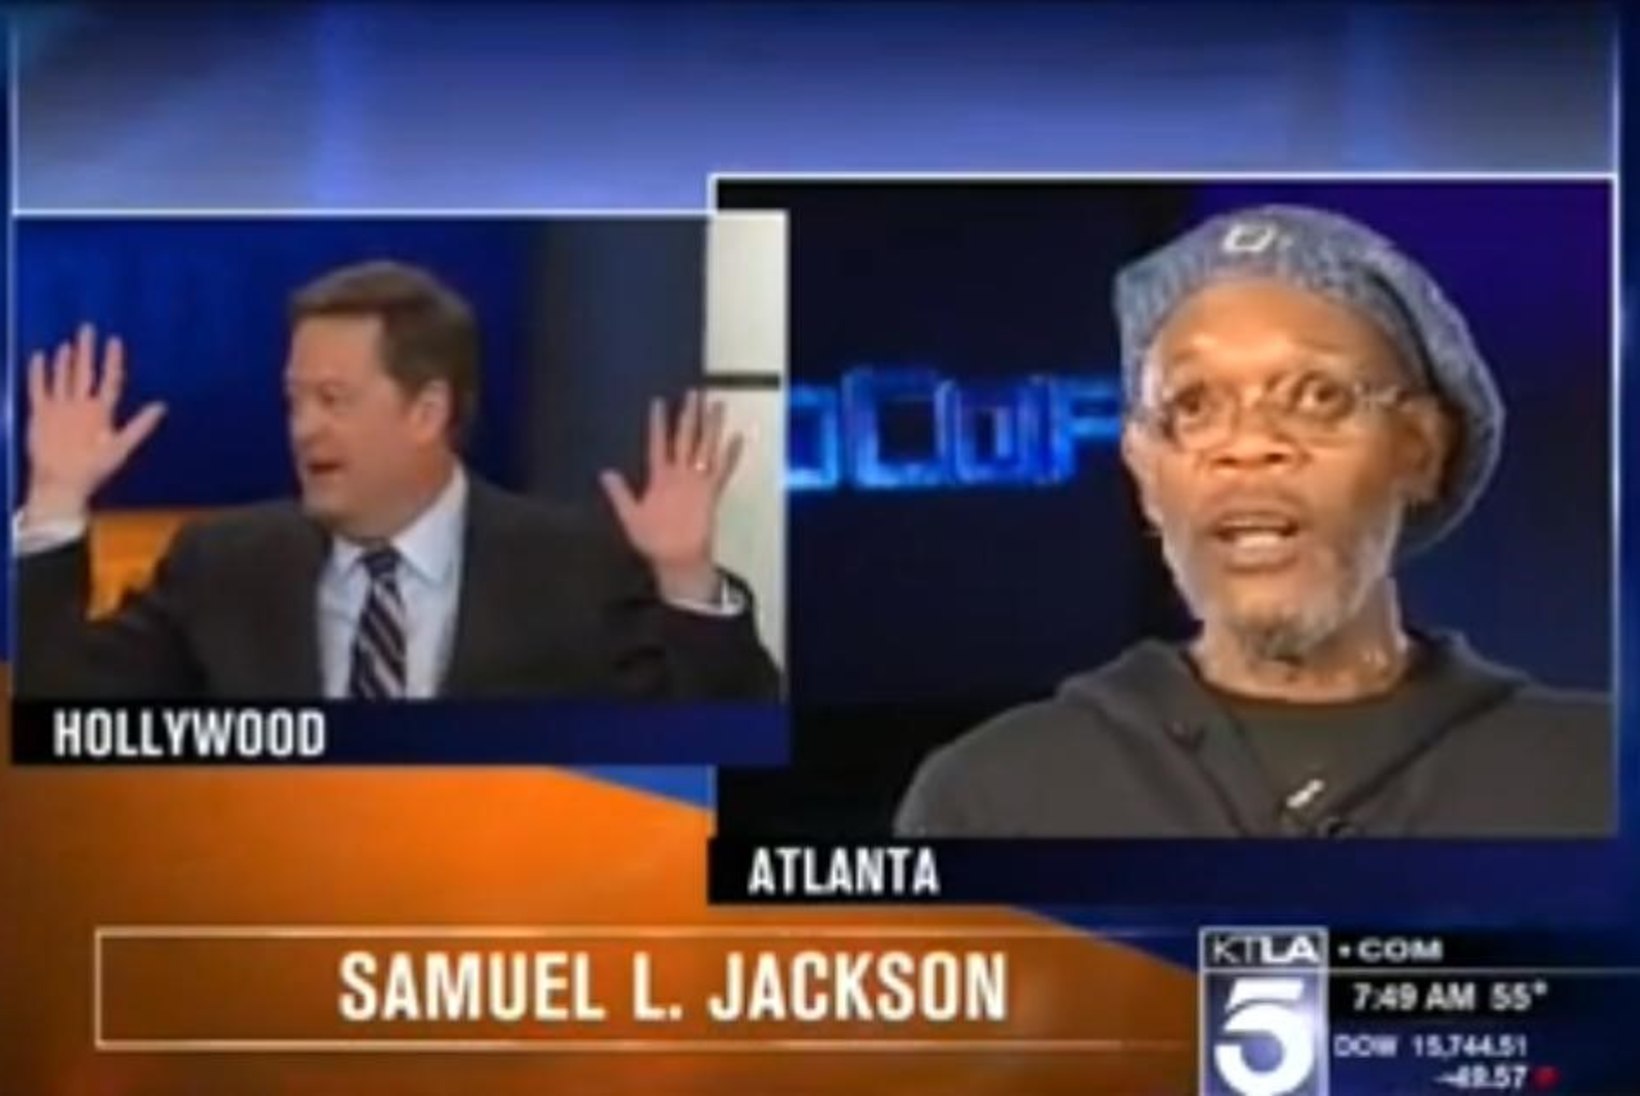 VIDEO: Samuel L. Jackson vihastas teda "Matrixi" näitlejaga sassi ajanud uudisteankru peale!